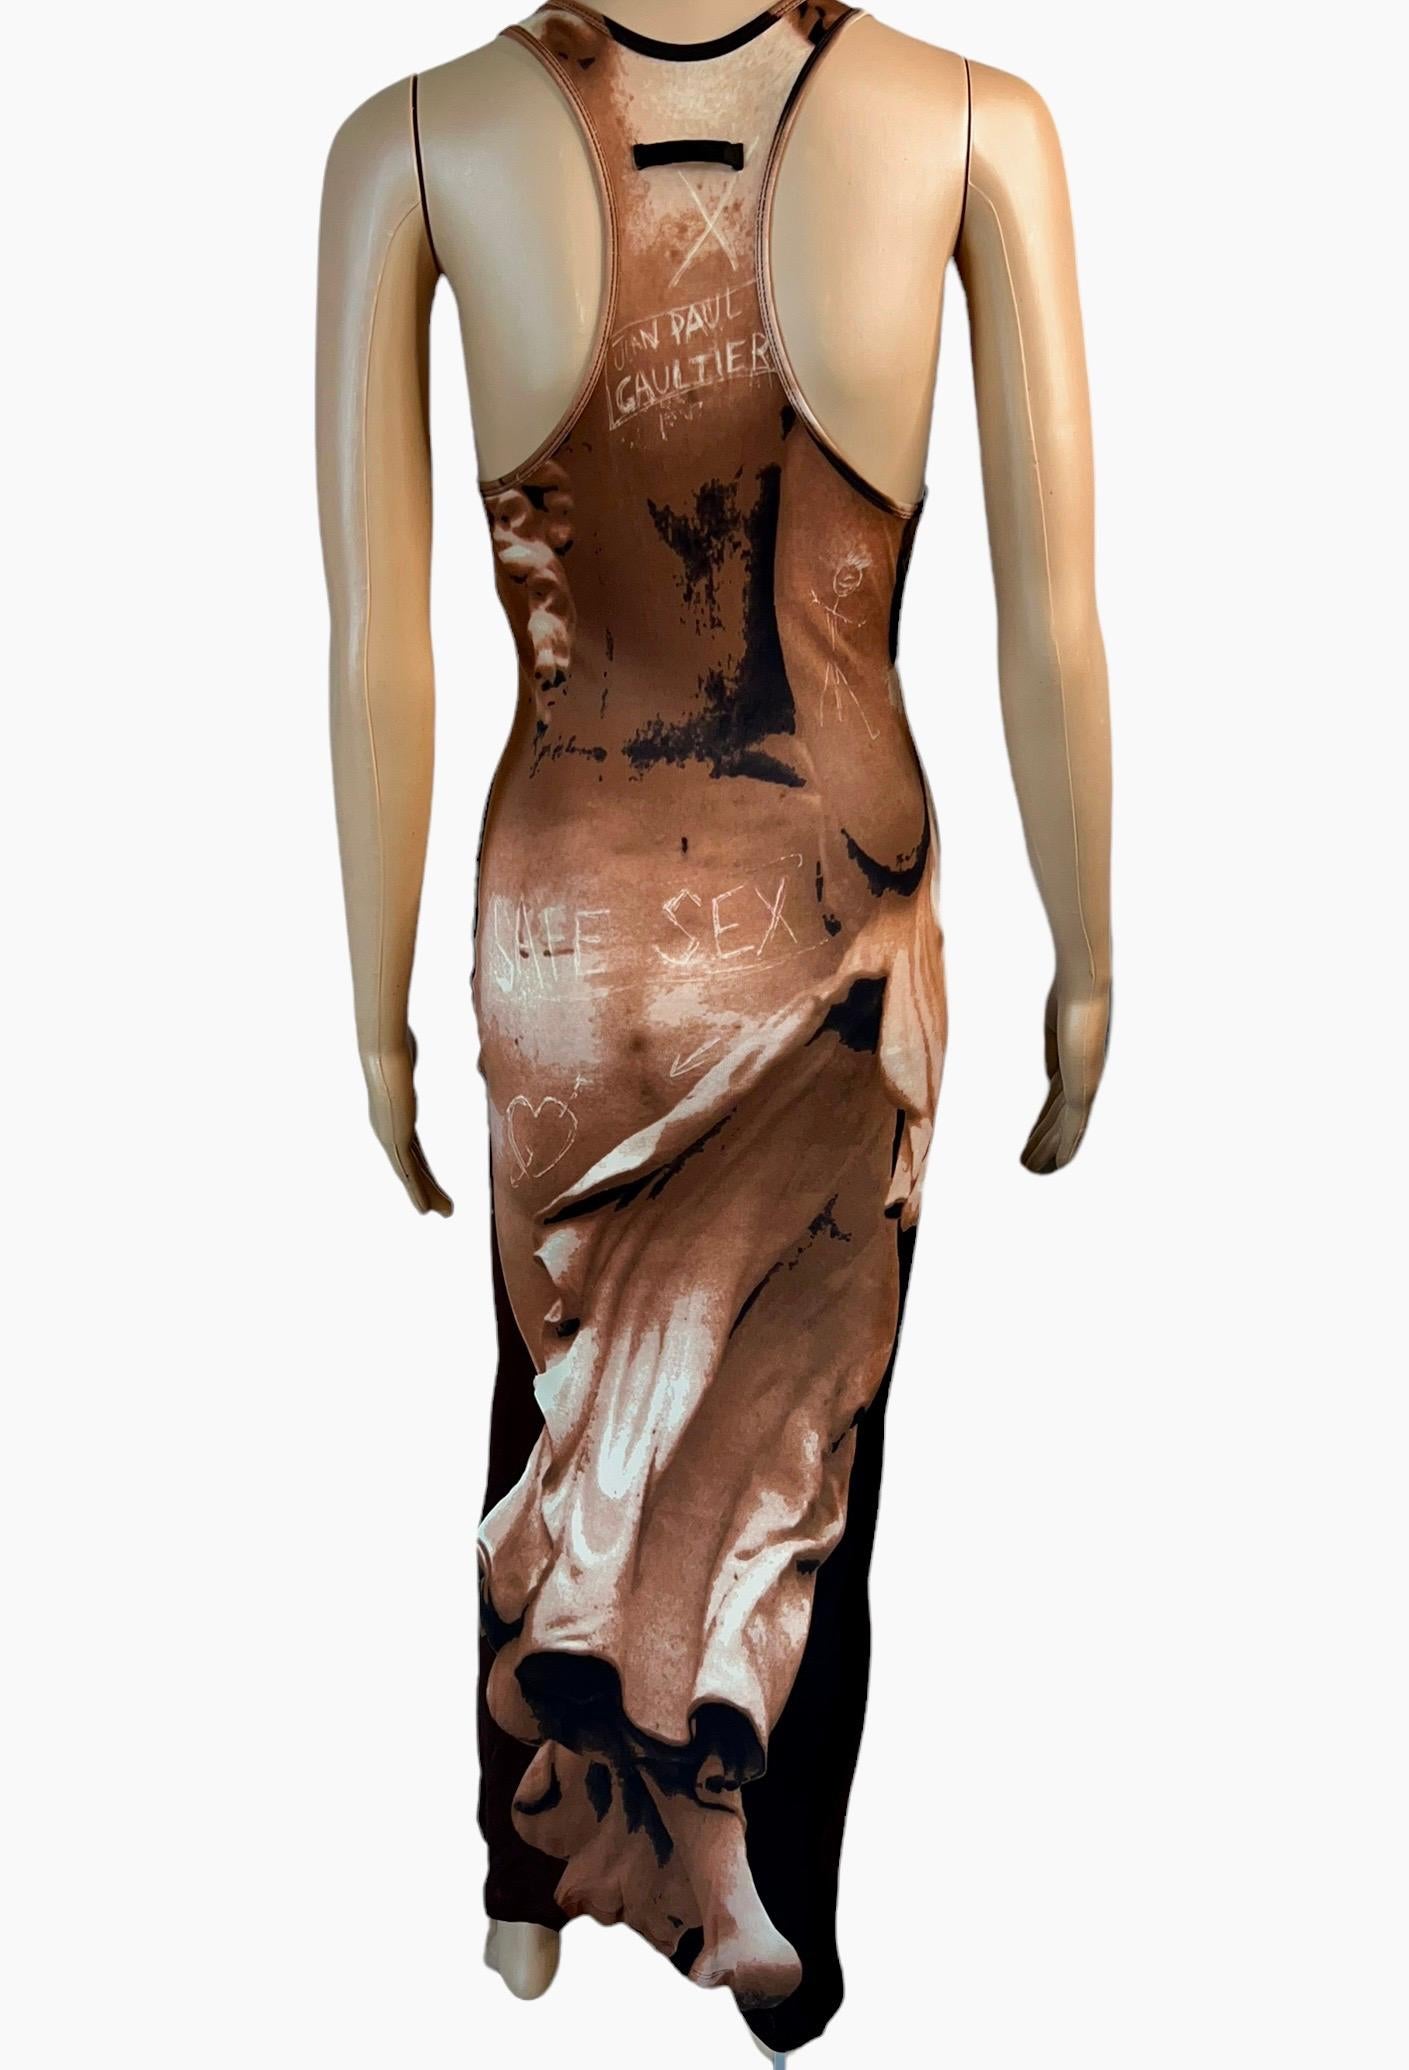 Women's or Men's Jean Paul Gaultier S/S 1999 Runway Goddess Trompe L'oeil Graffiti Maxi Dress For Sale